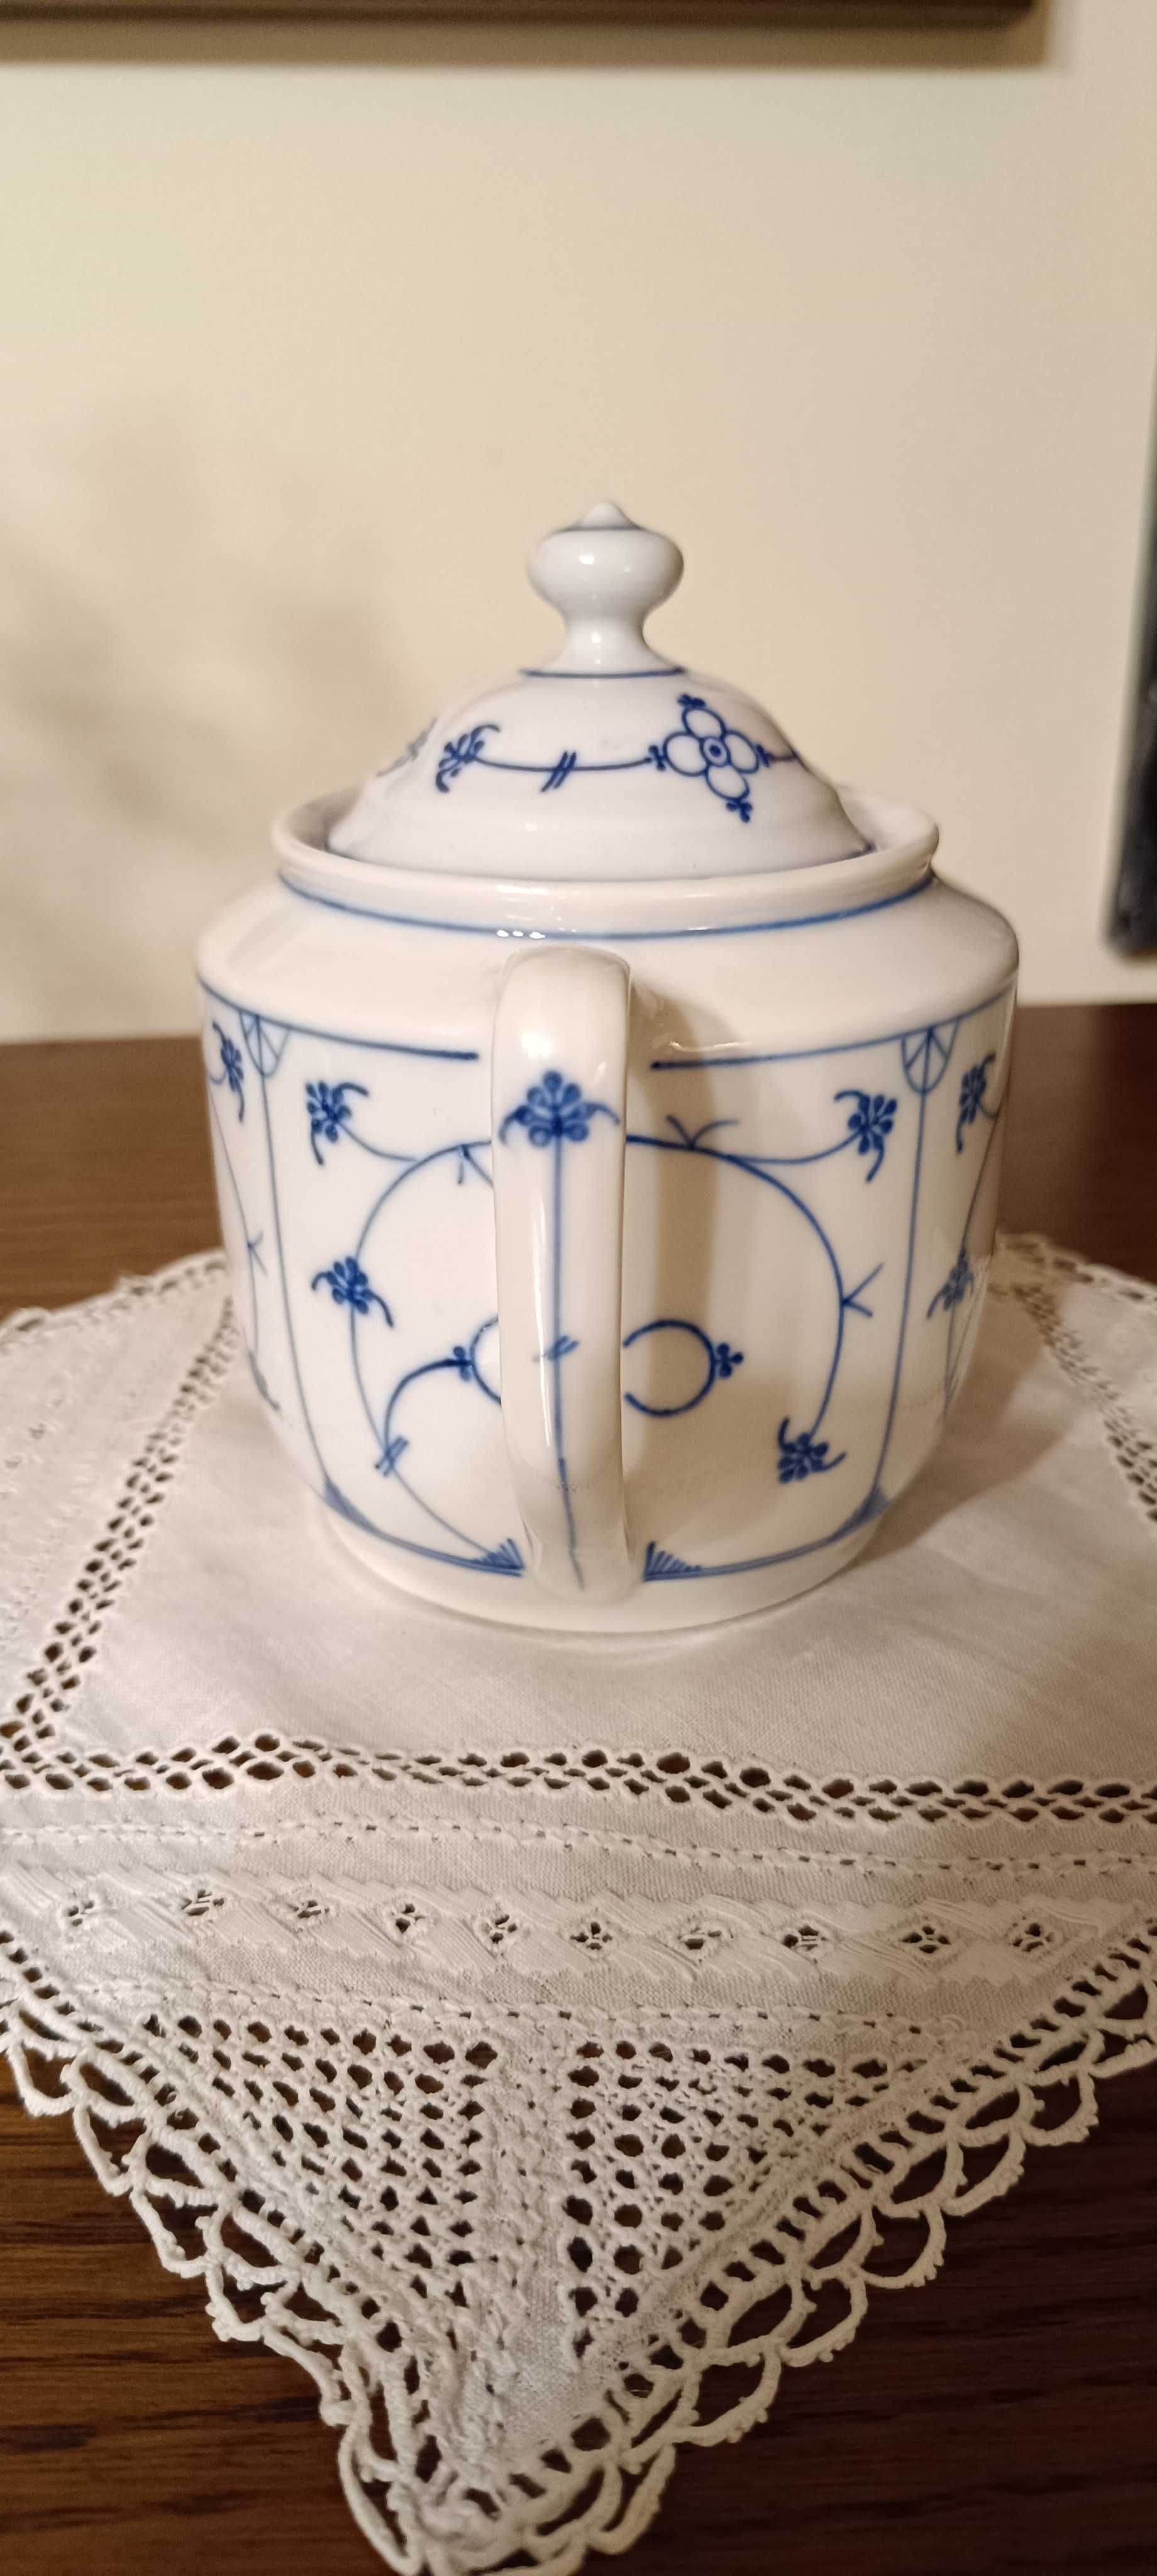 Cukiernica z porcelany, sygnowana wzór słomkowy